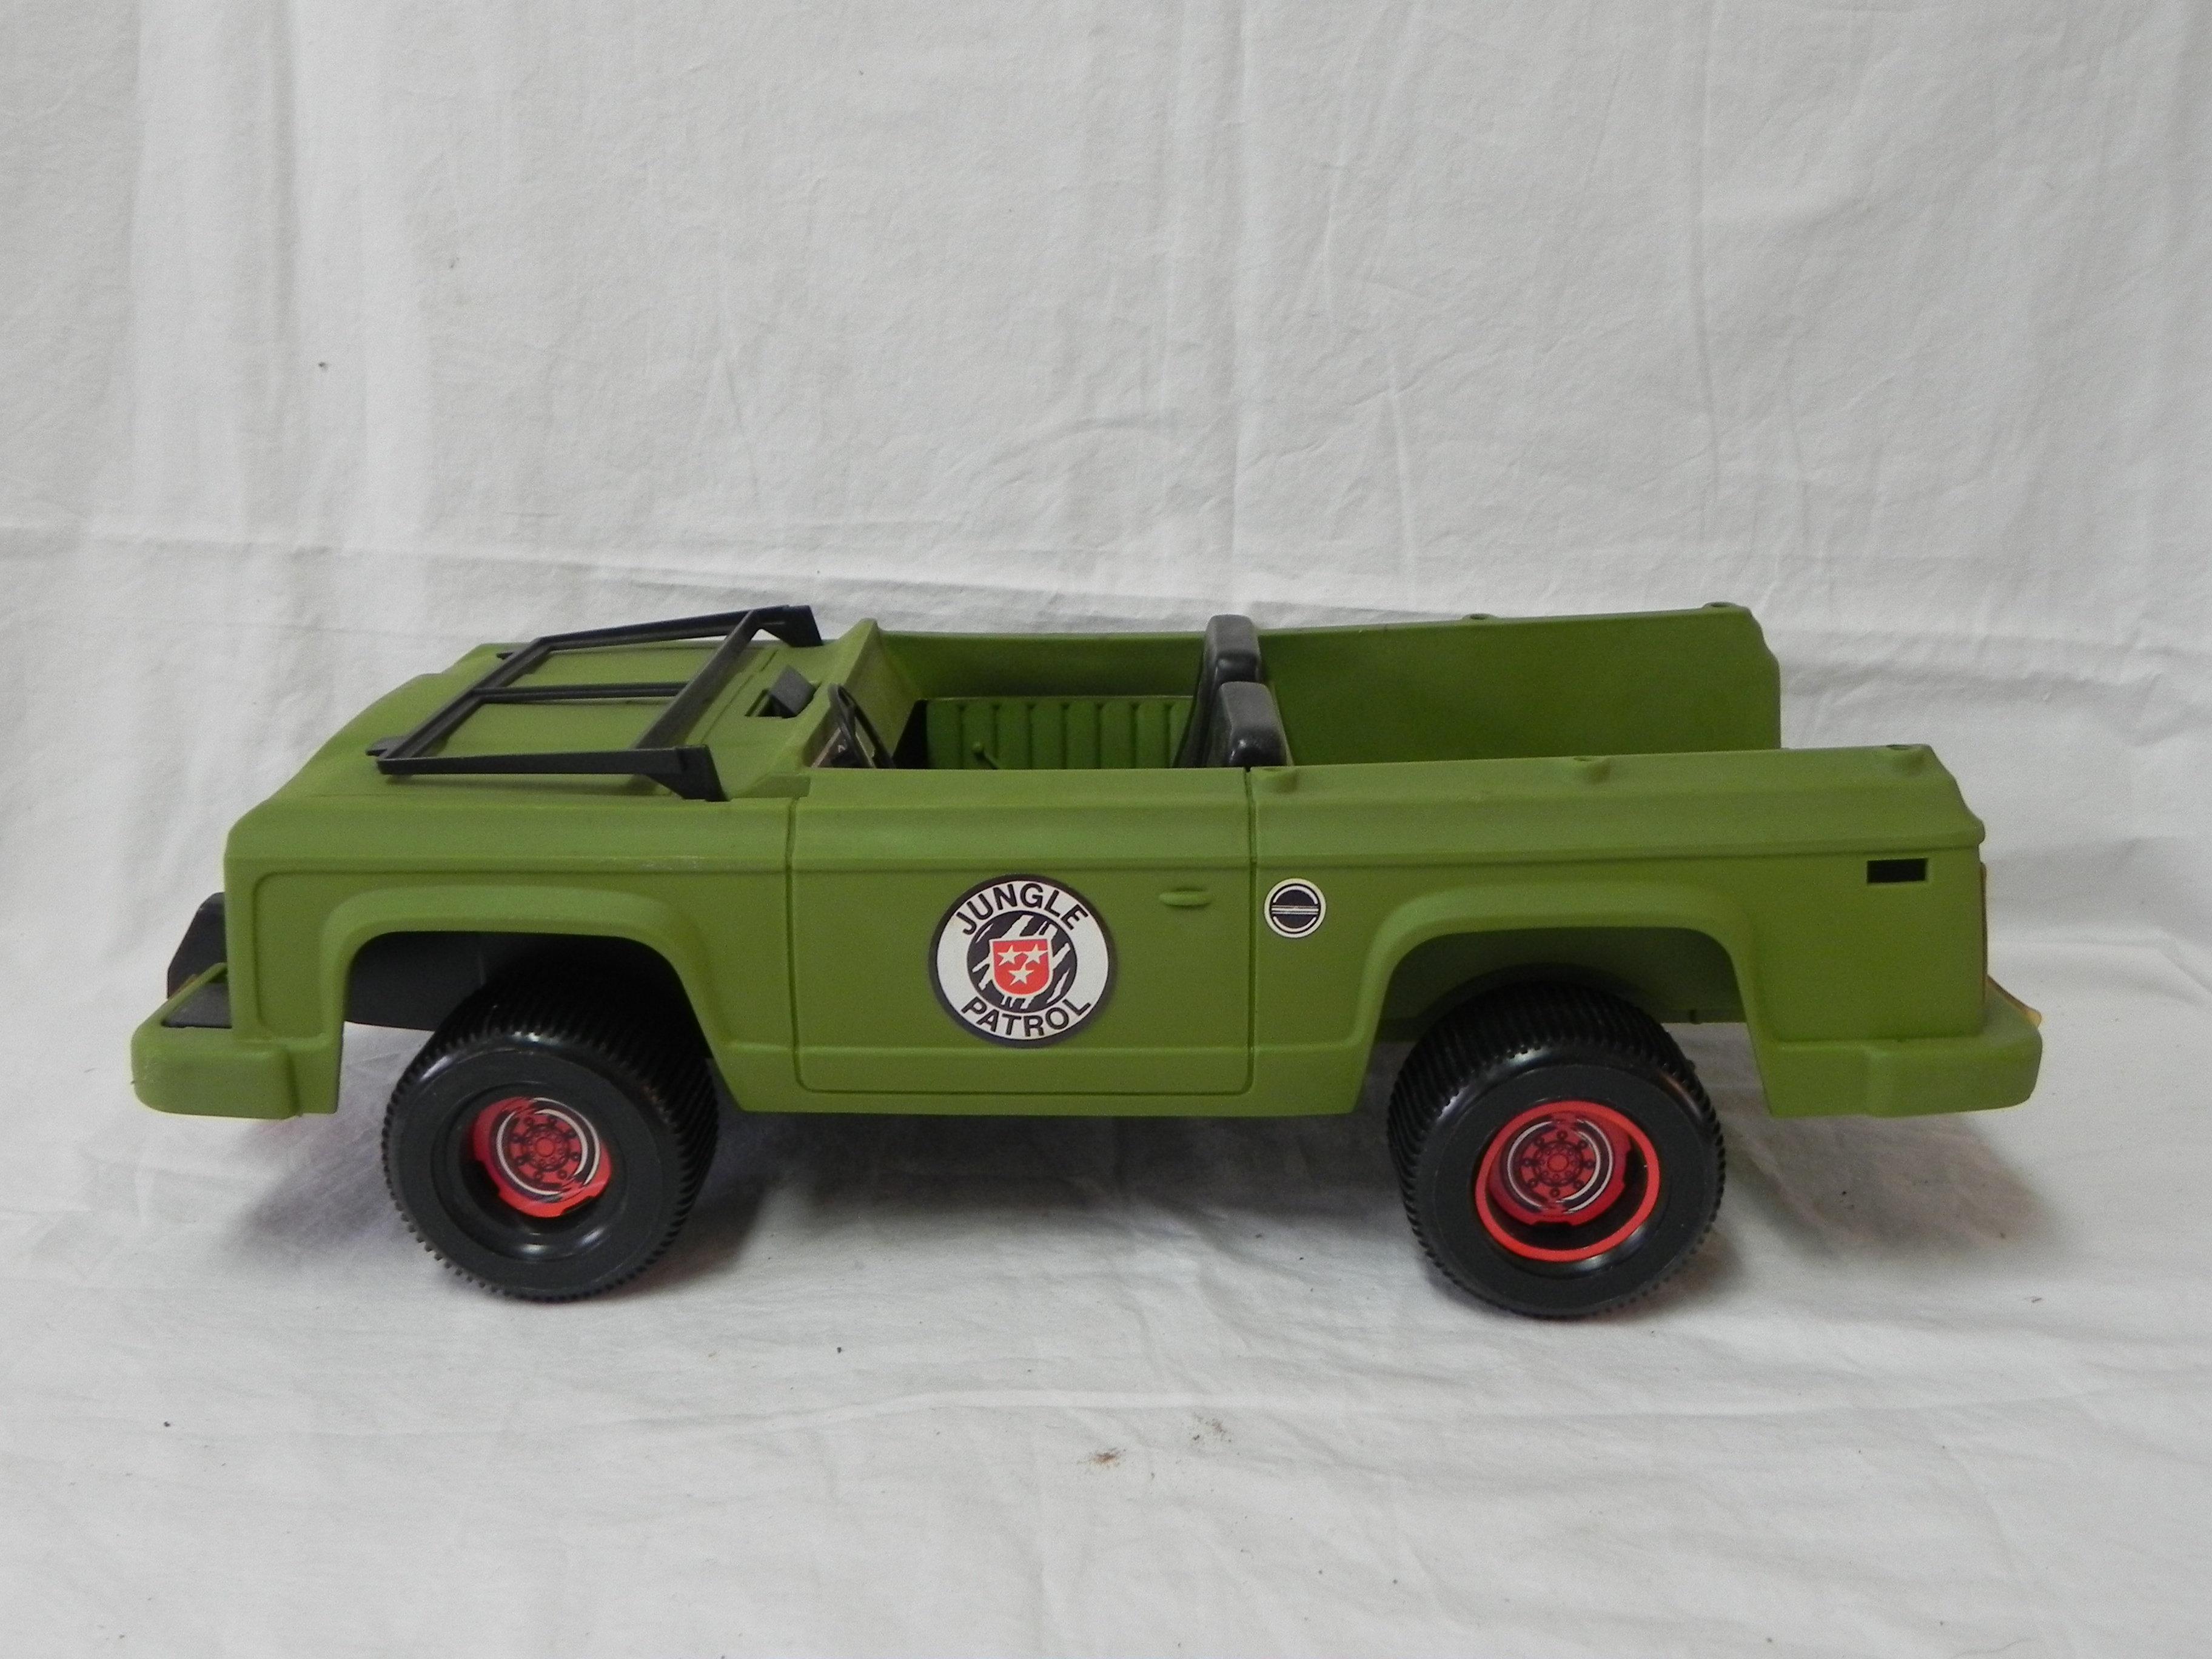 Mattel “Big Jim” Jungle Patrol Jeep